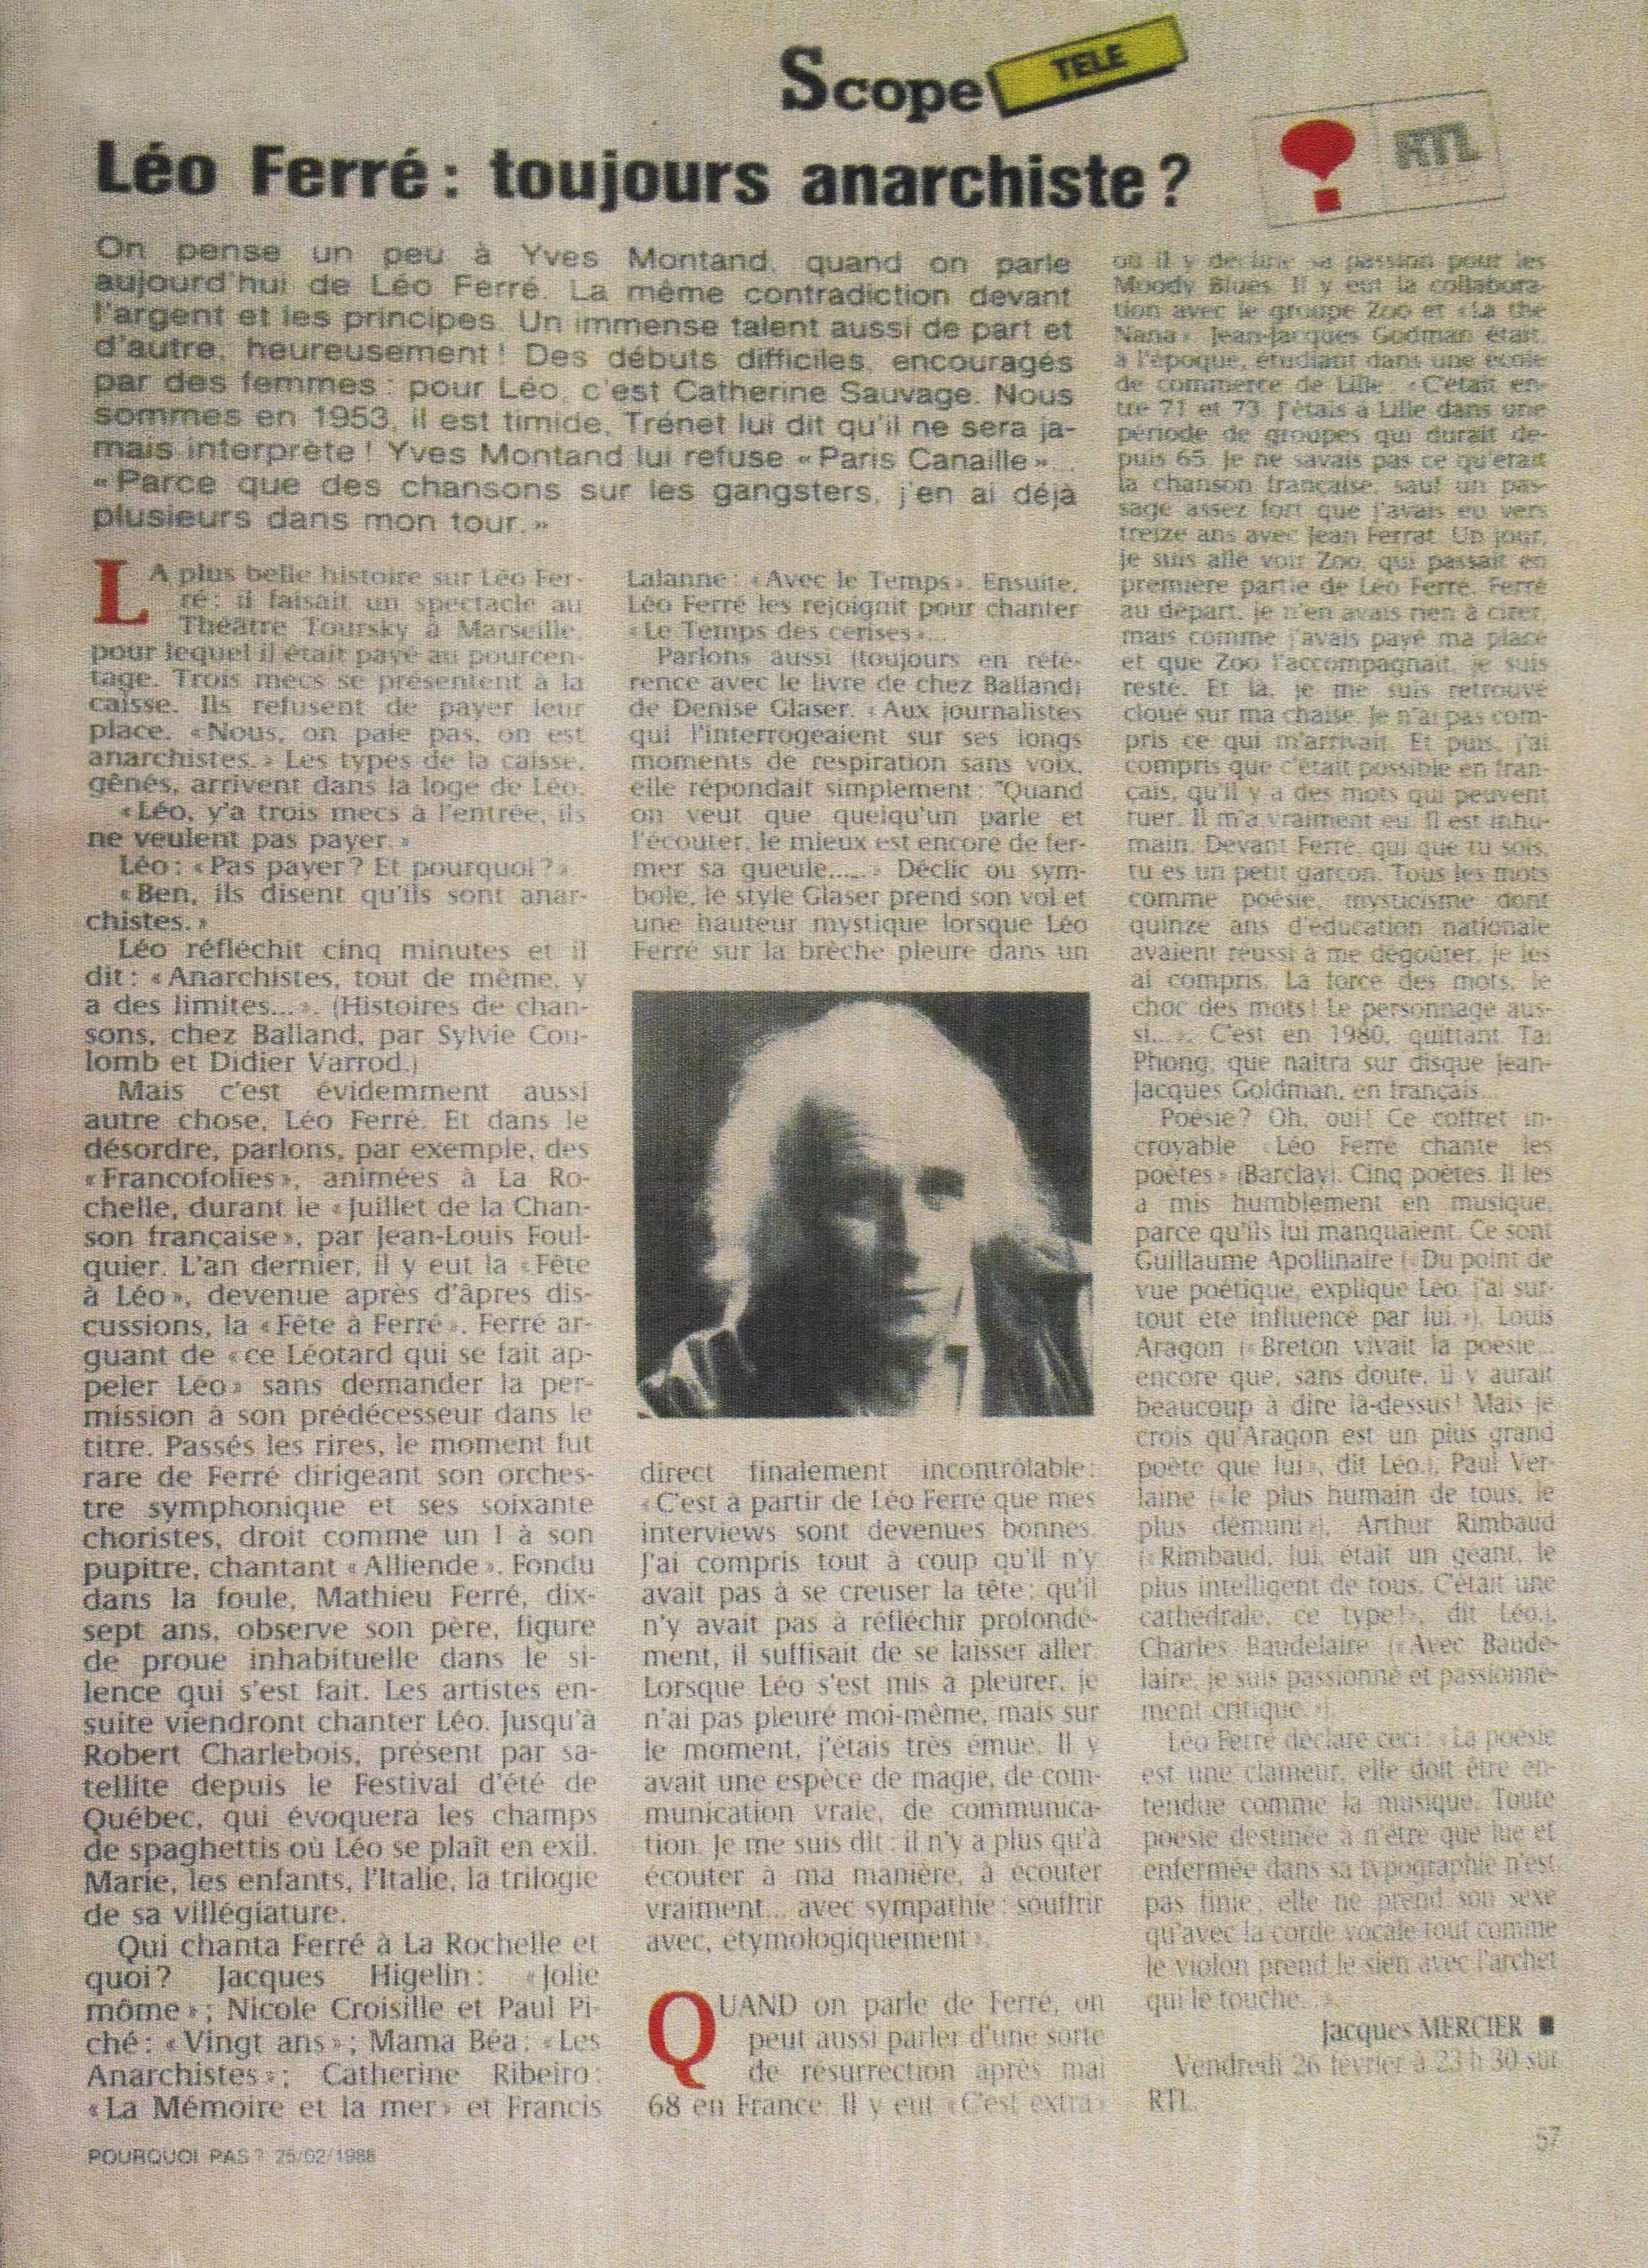 Léo Ferré - Pourquoi pas ? du 25/02/1988